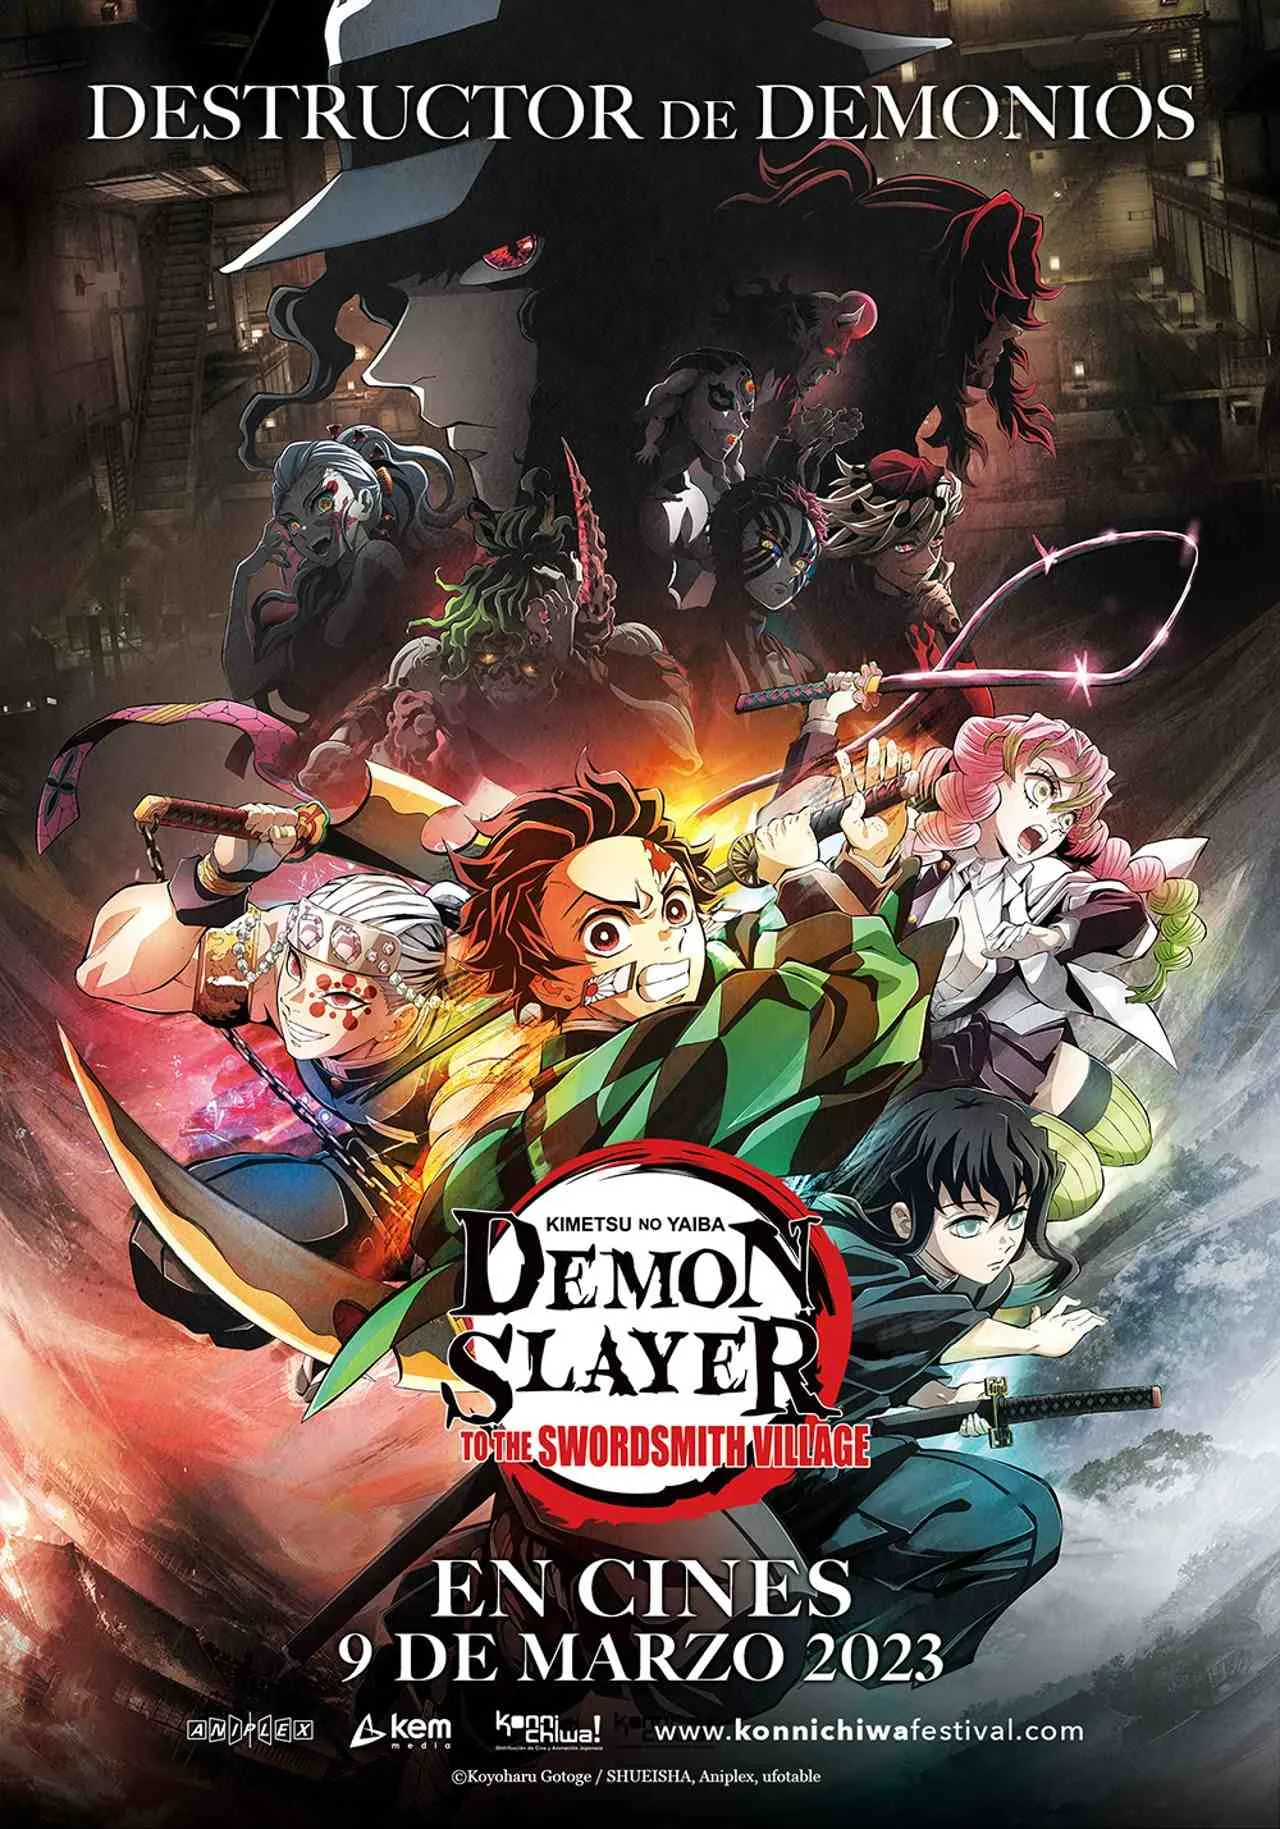 Demon Slayer 3: cuándo será estrenada la temporada 3 de Kimetsu no